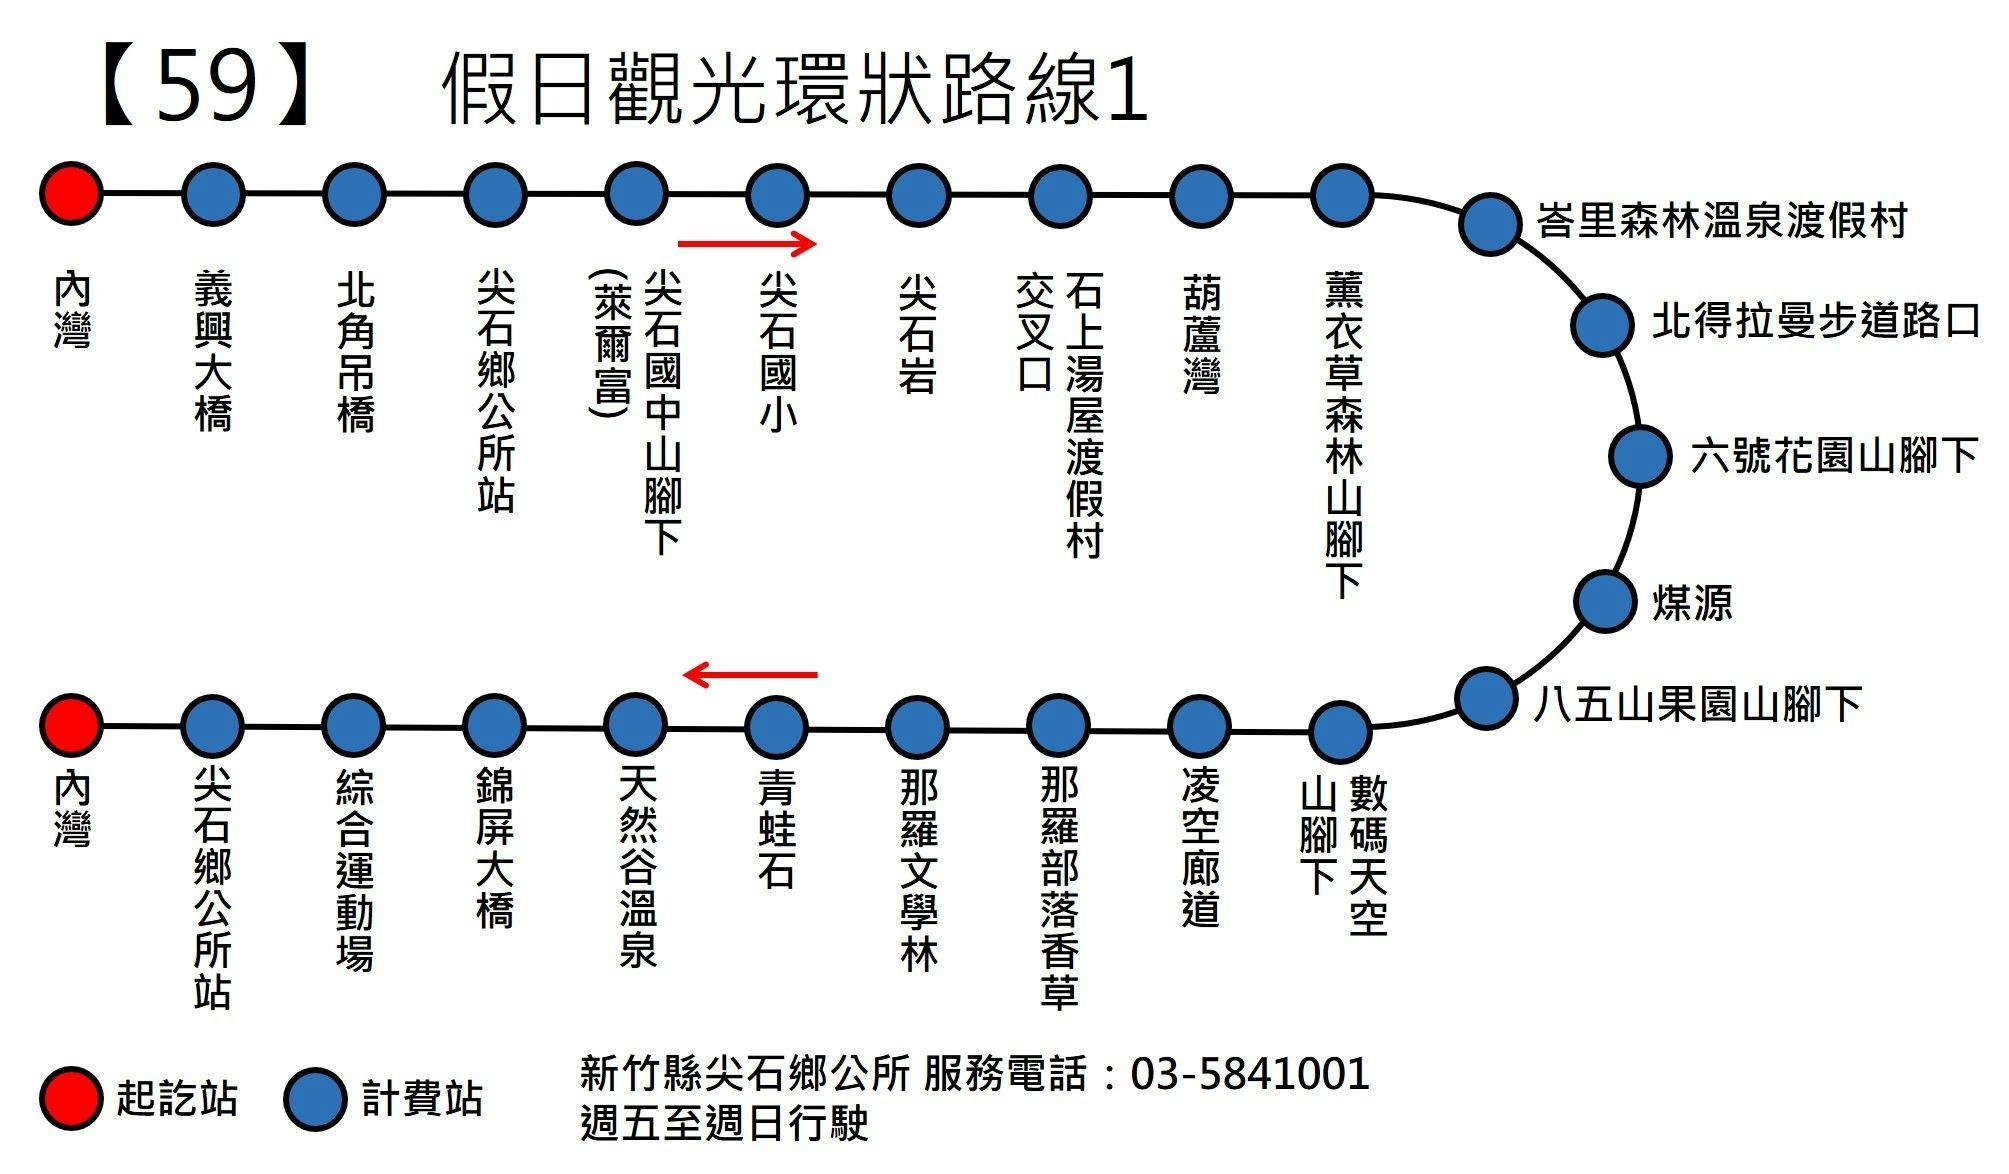 竹60Route Map-新竹縣 Bus